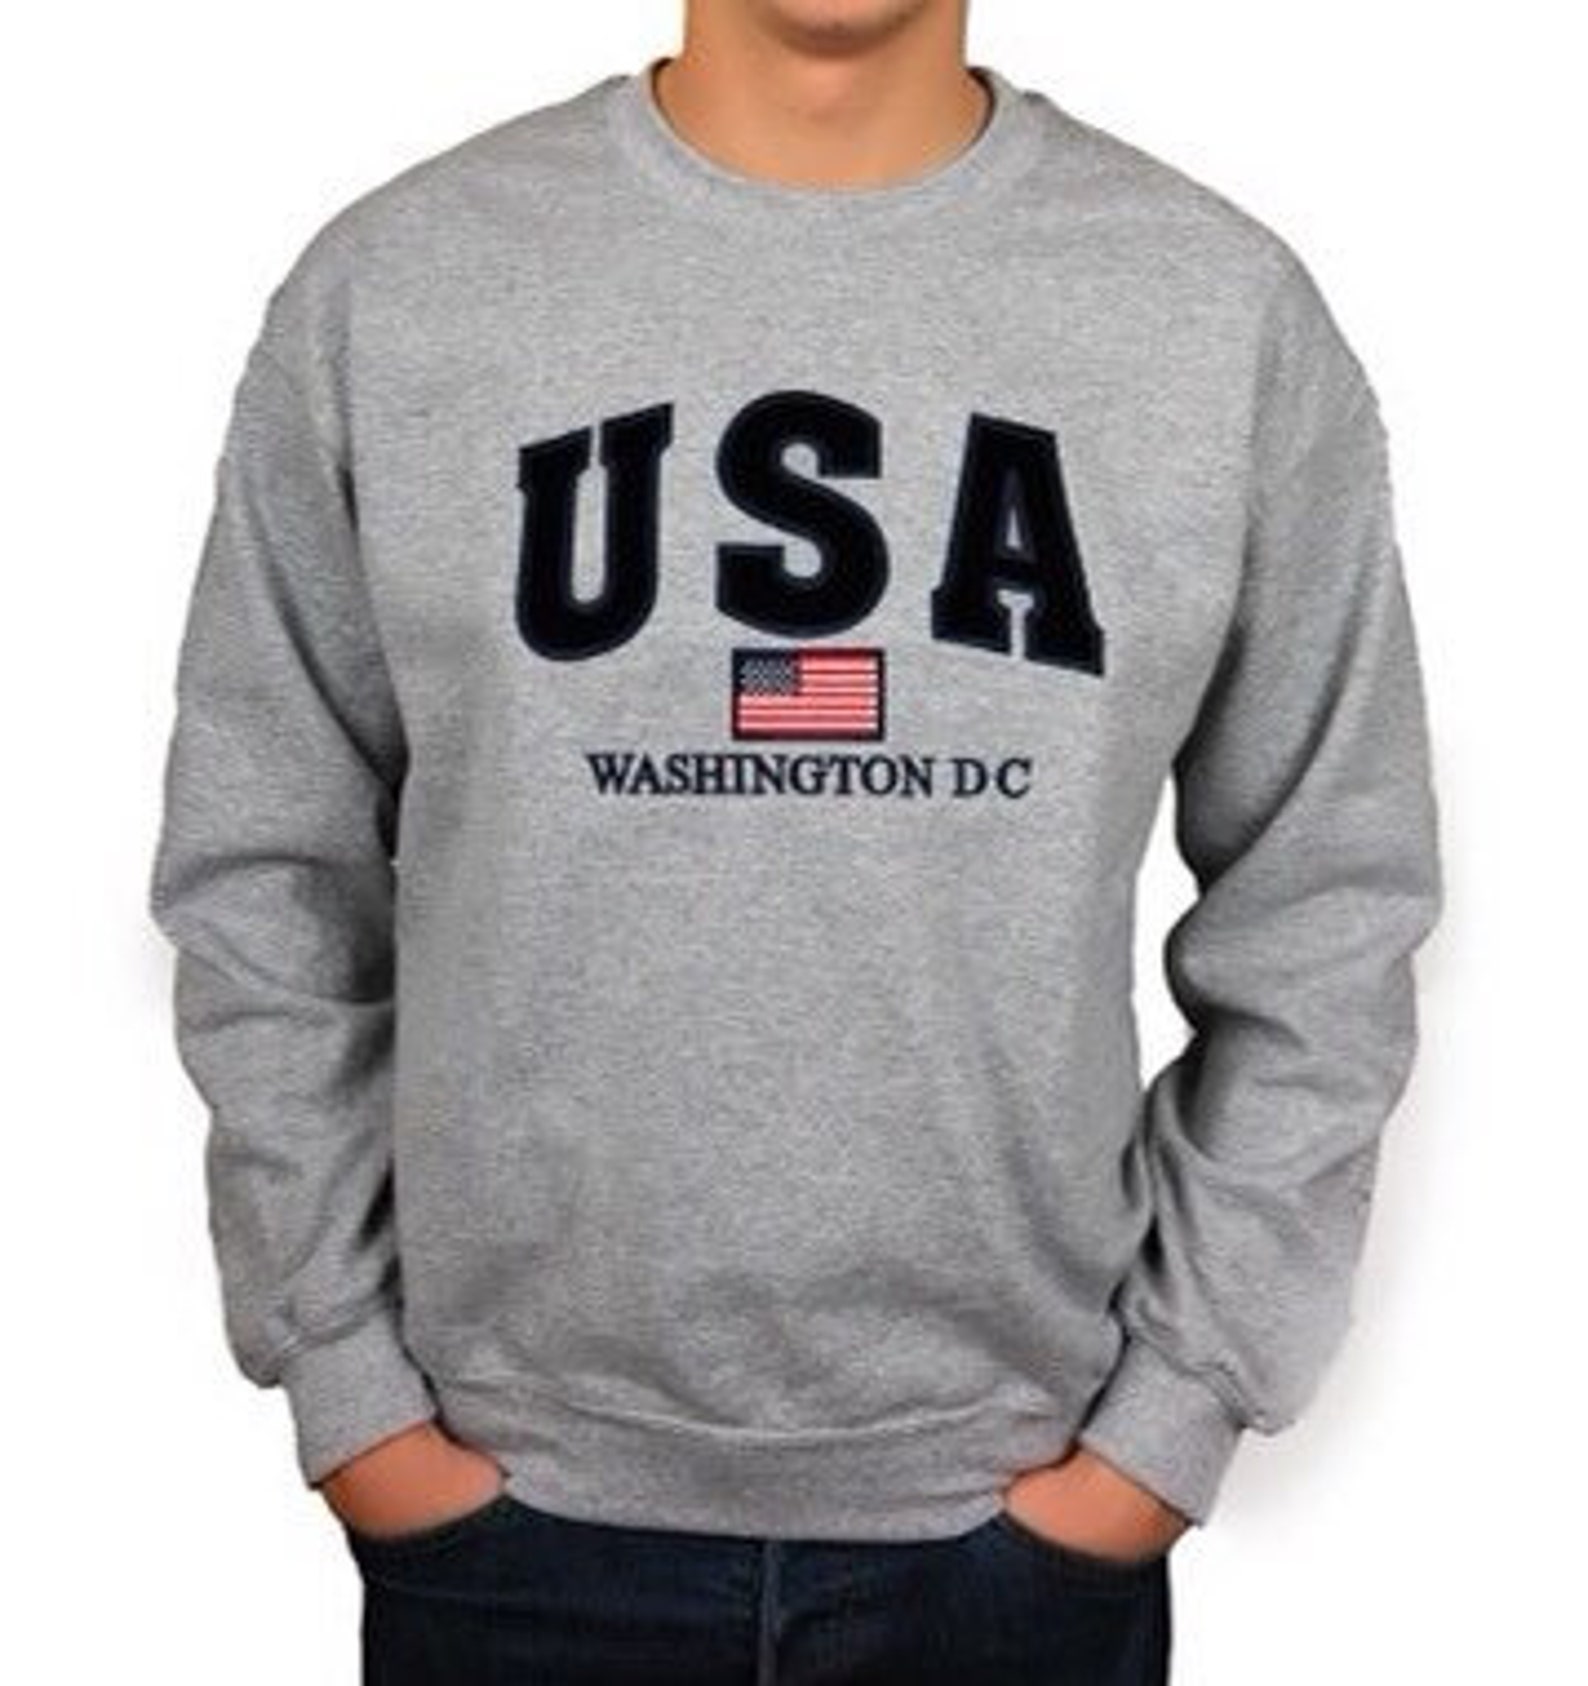 USA Washington DC Embroidered Unisex Crewneck Sweatshirt Grey - Etsy